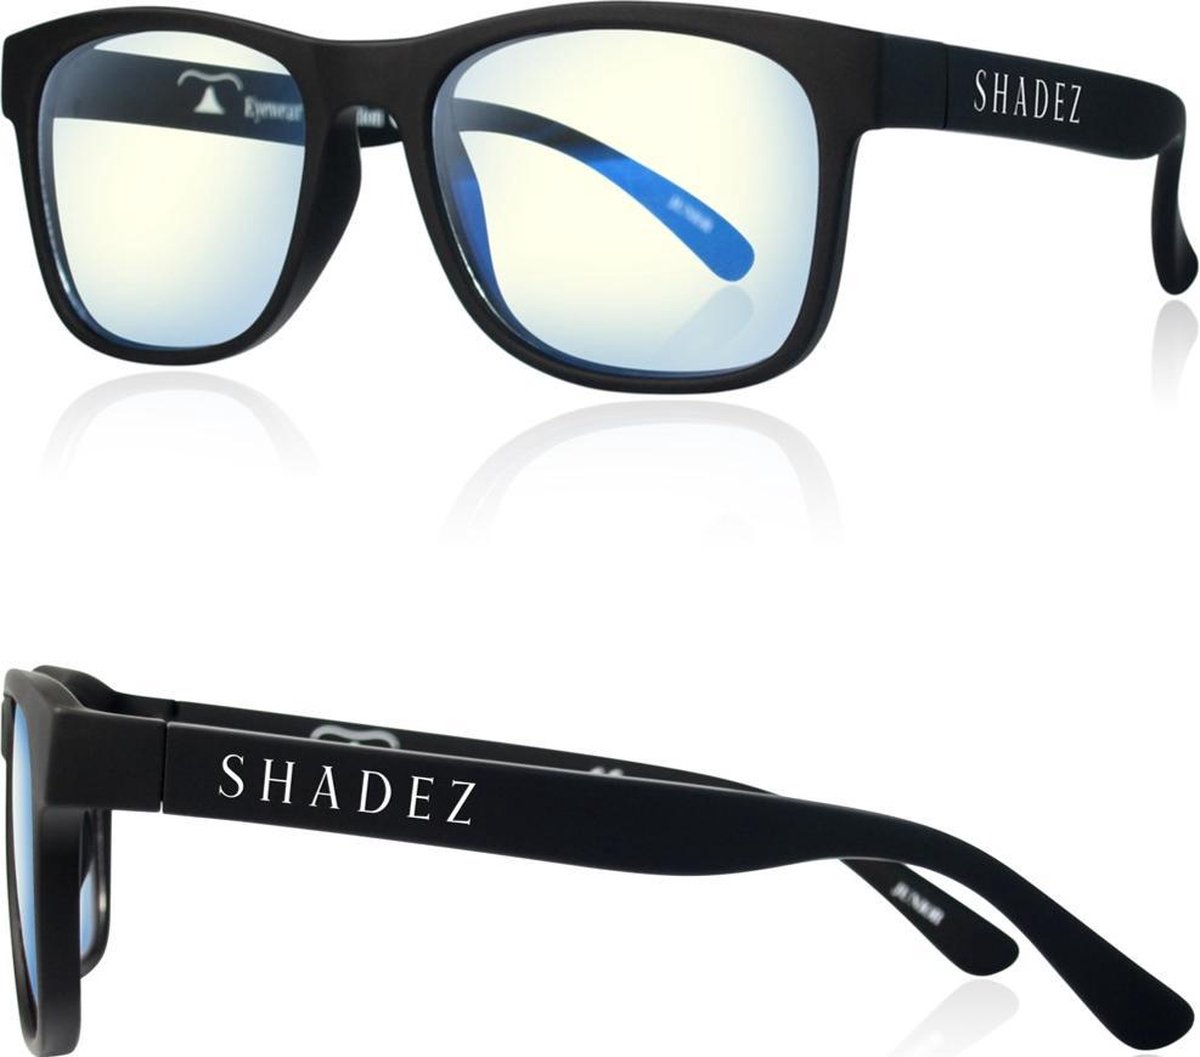 Beeldschermbril kind - Gamebril - Computerbril - Shadez - Zwart 3-7 jr